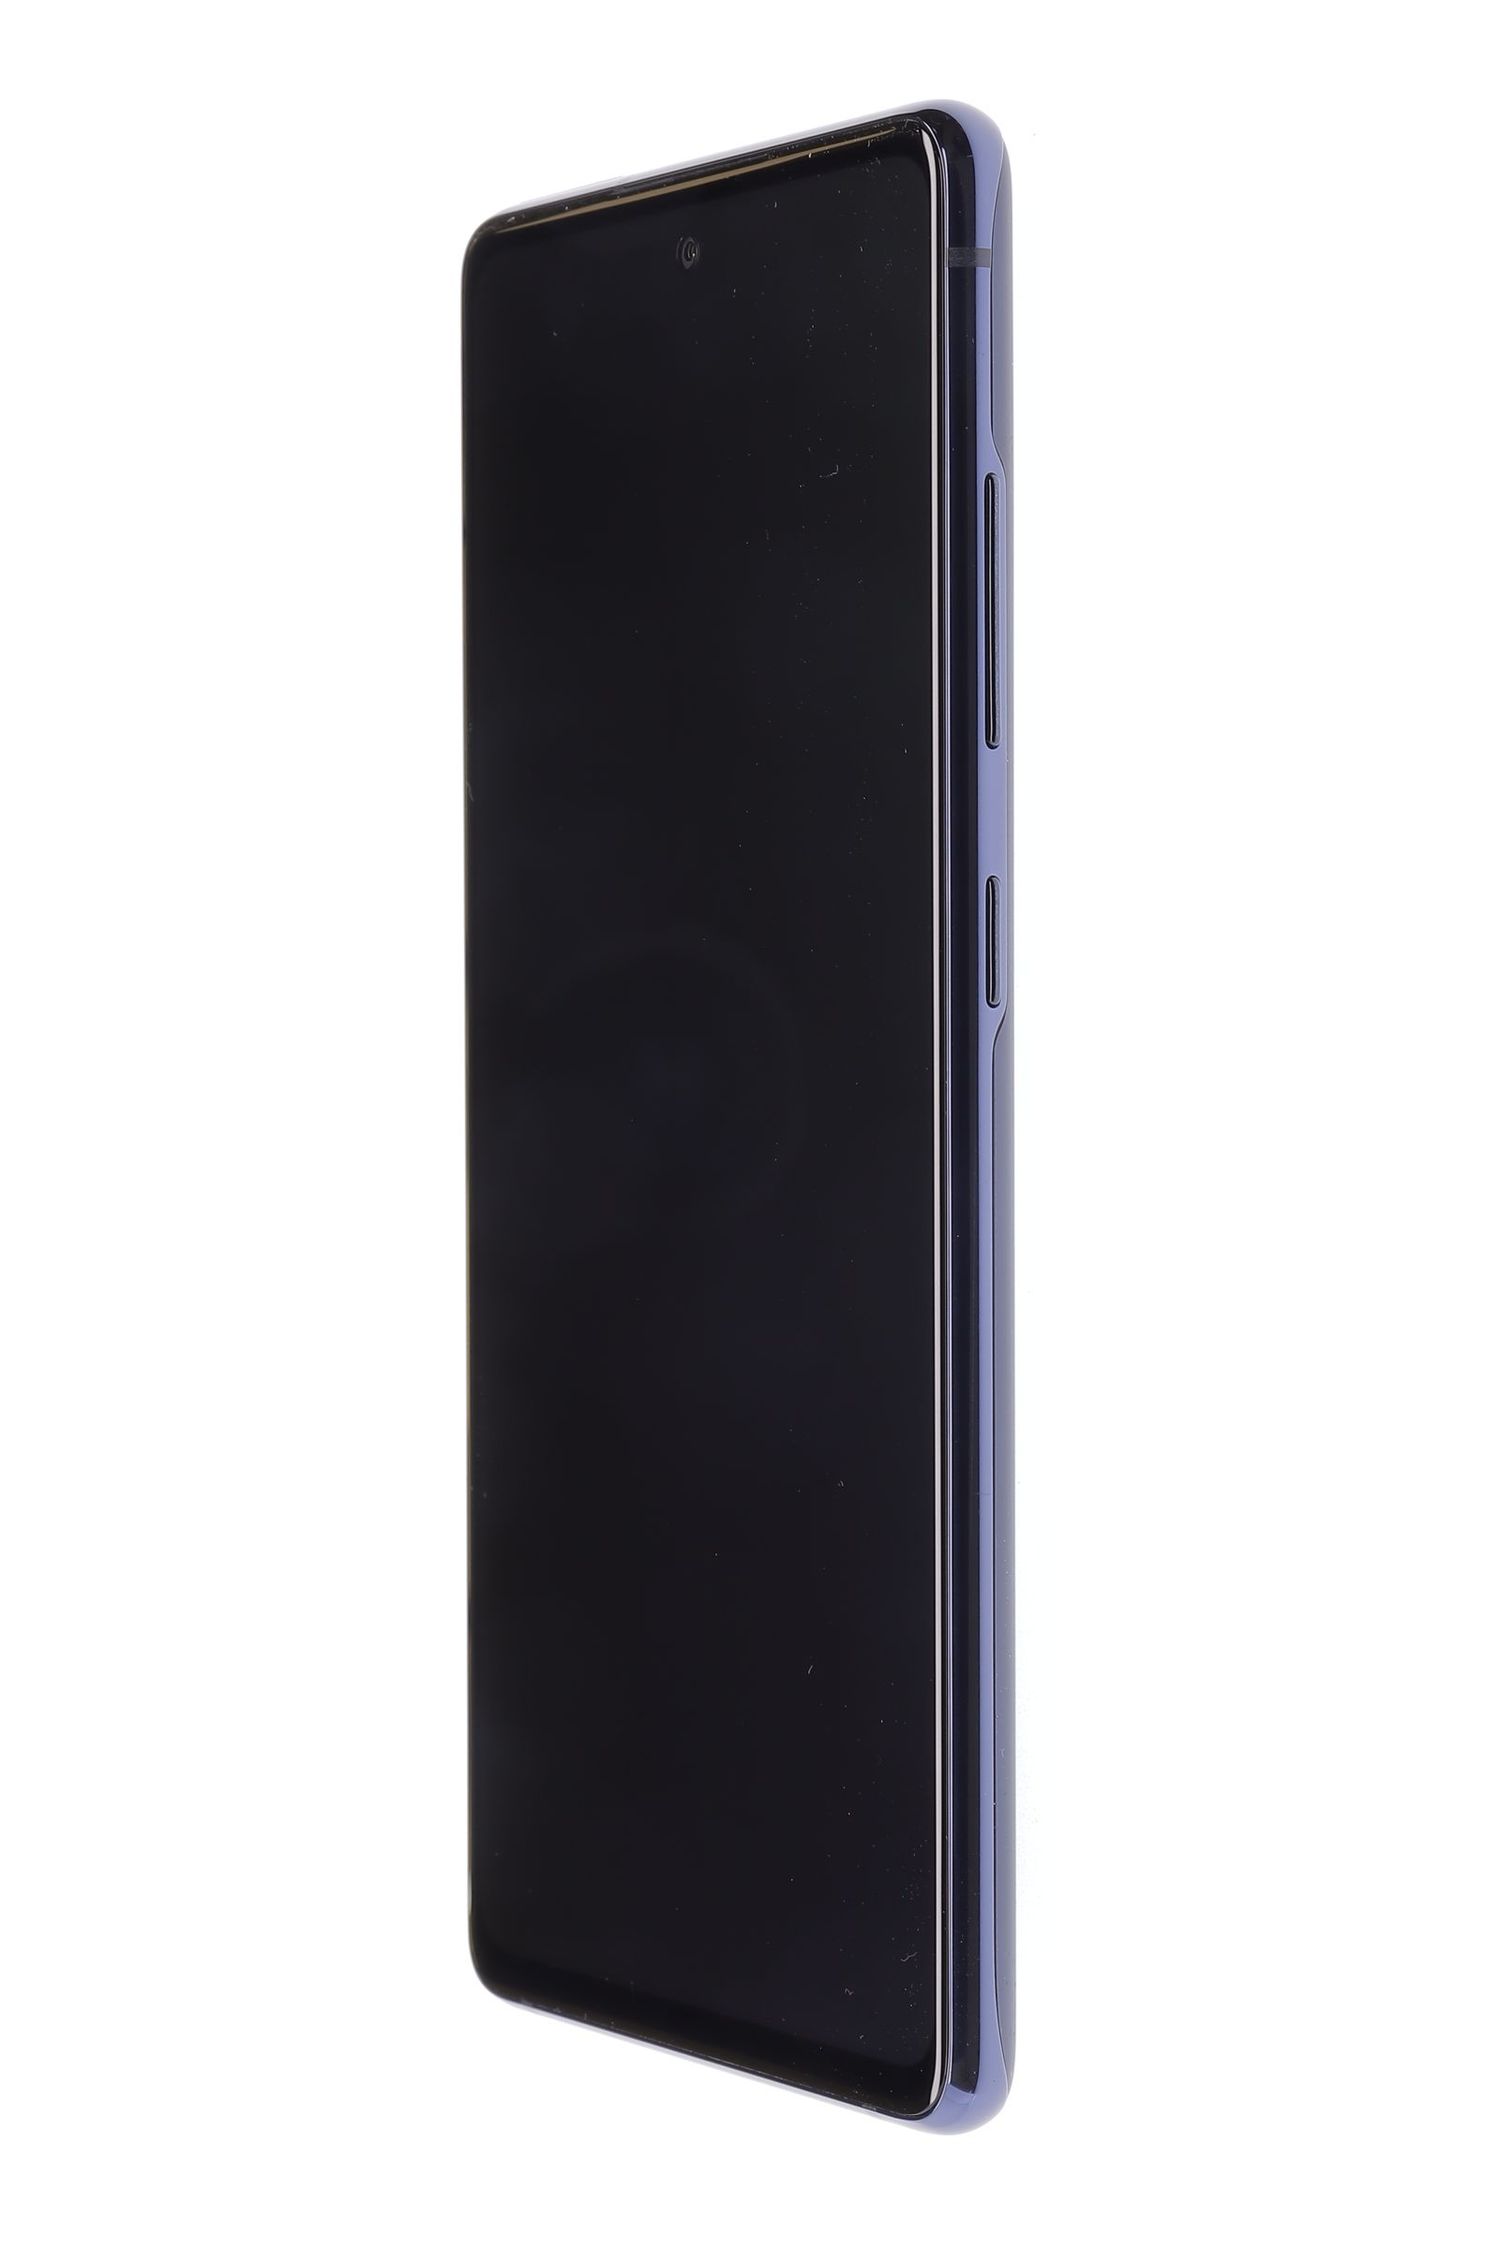 Telefon mobil Samsung Galaxy S20 FE 5G Dual Sim, Cloud Navy, 128 GB, Foarte Bun